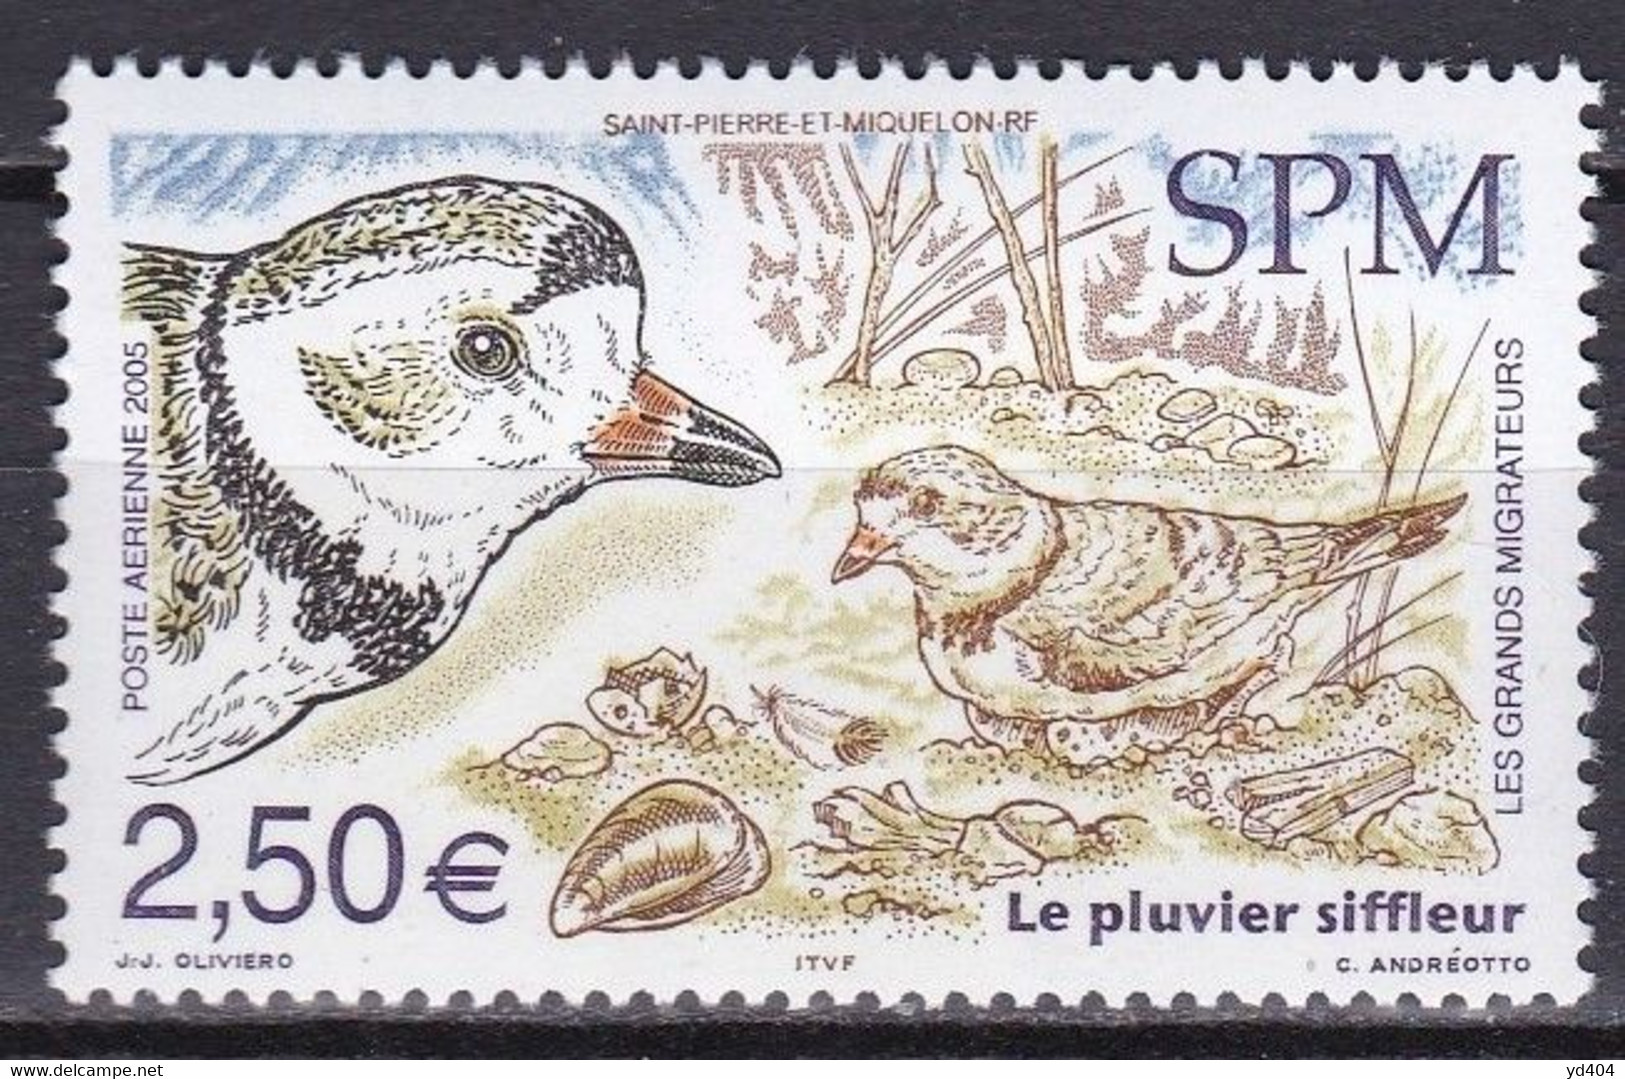 PM-428 – ST PIERRE & MIQUELON – AIRMAIL - 2005 – MIGRATORY BIRDS – SG # 1008 MNH 10,50 € - Neufs